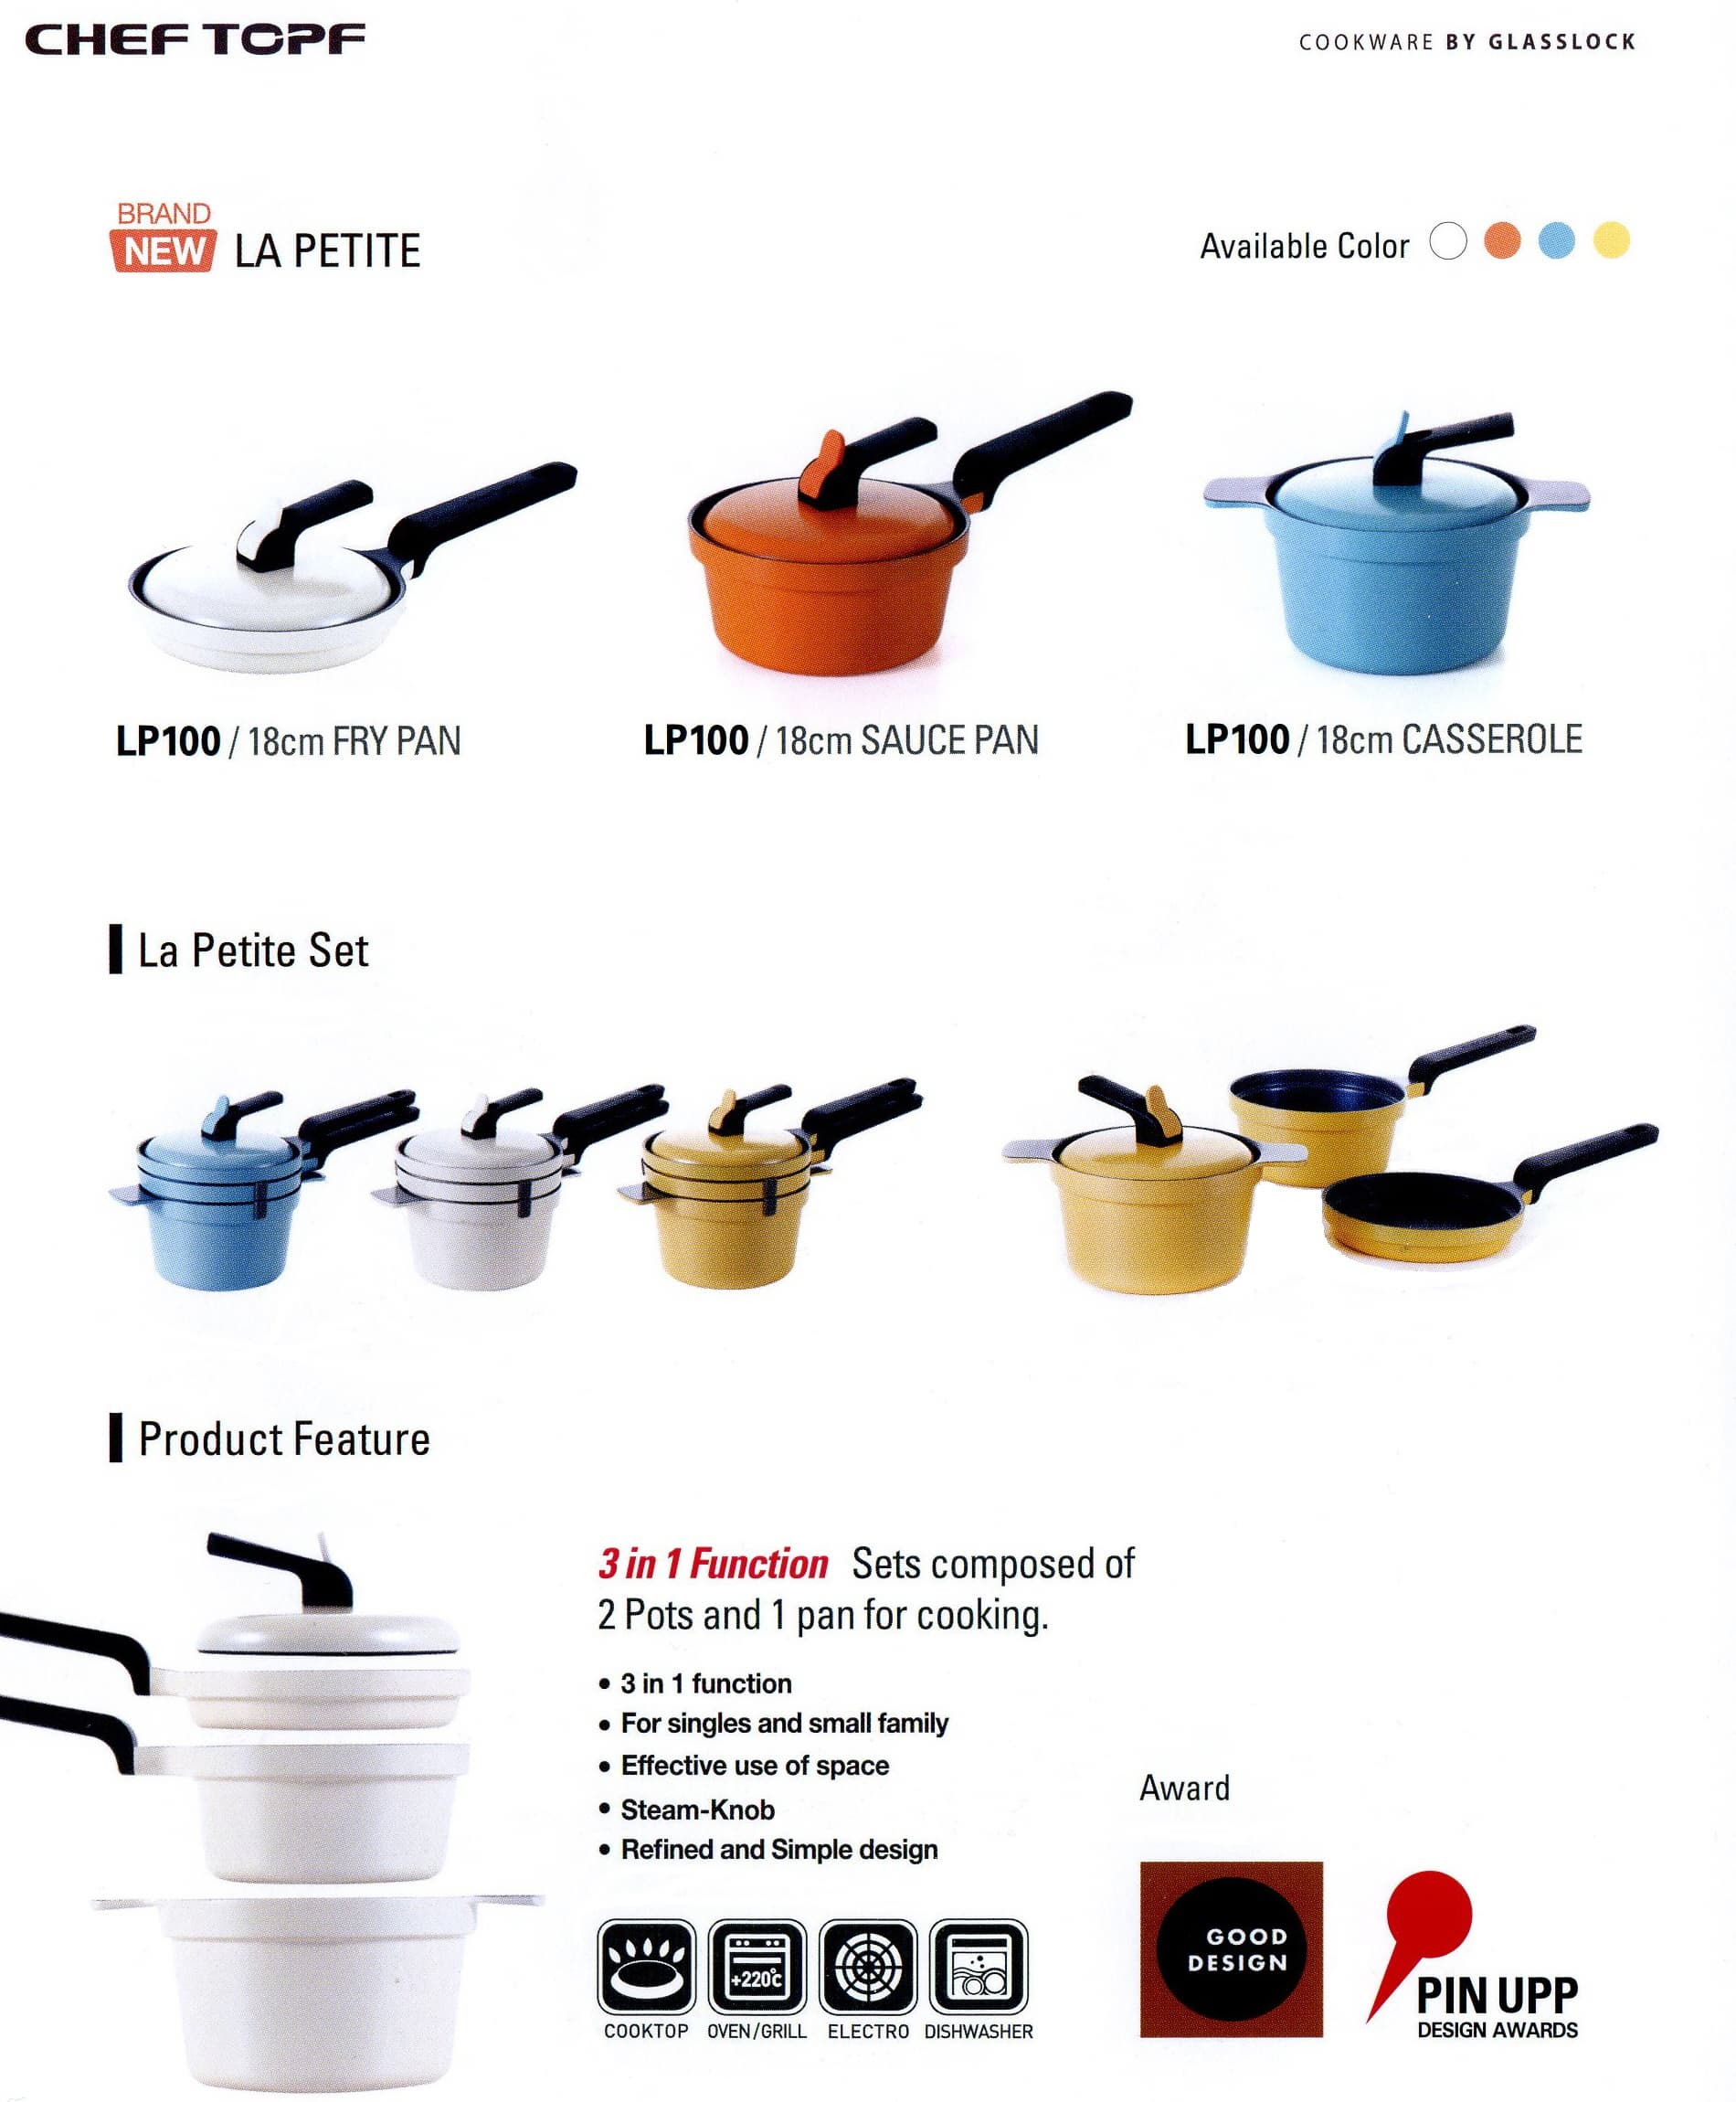 La Petite(Sets of 2 Pots & 1 Pan)